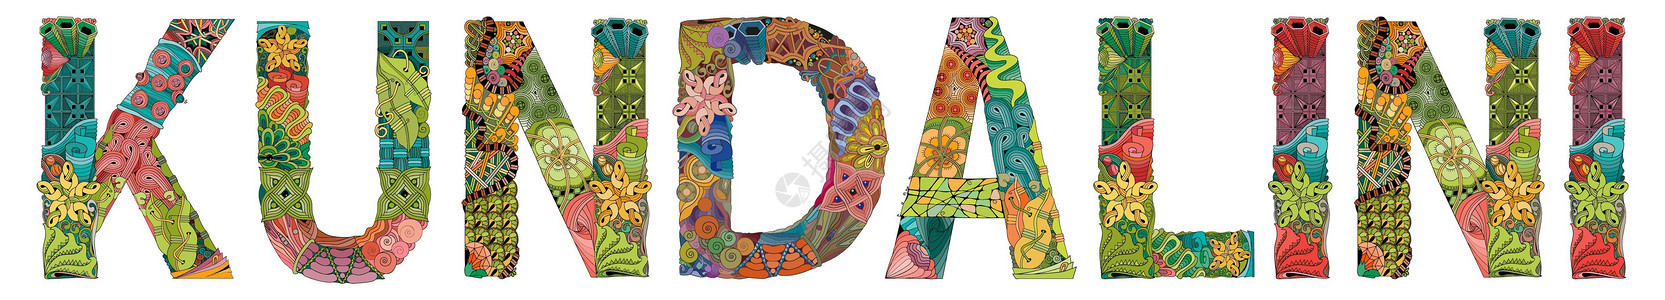 女神专属字体昆达里尼这个词 用于装饰的矢量 zentangle 对象设计图片